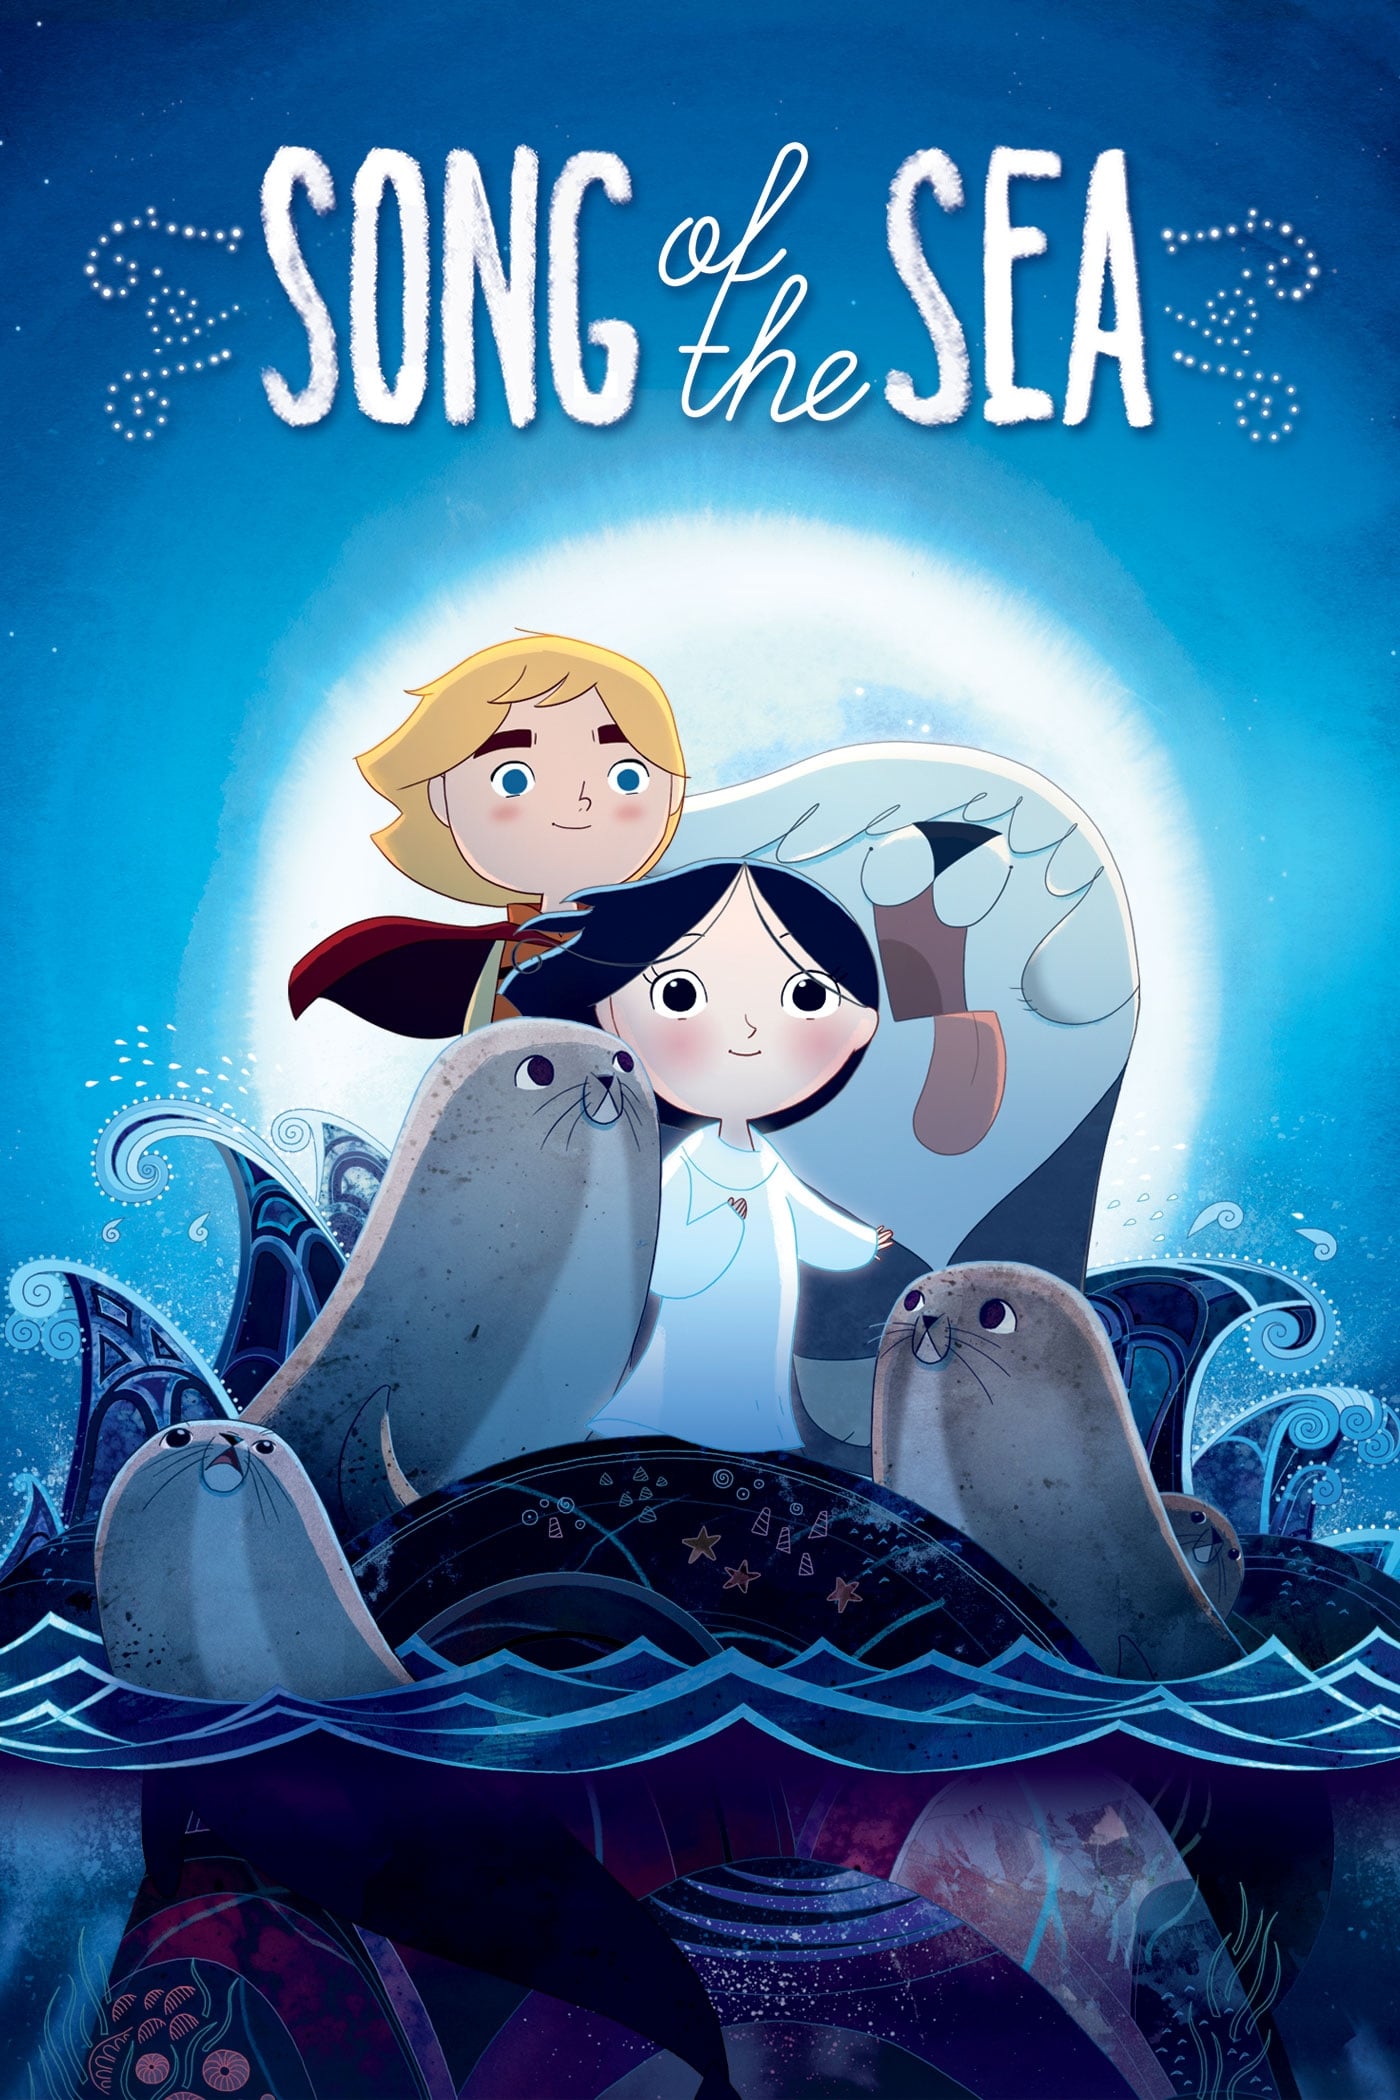 La canción del mar (2014)